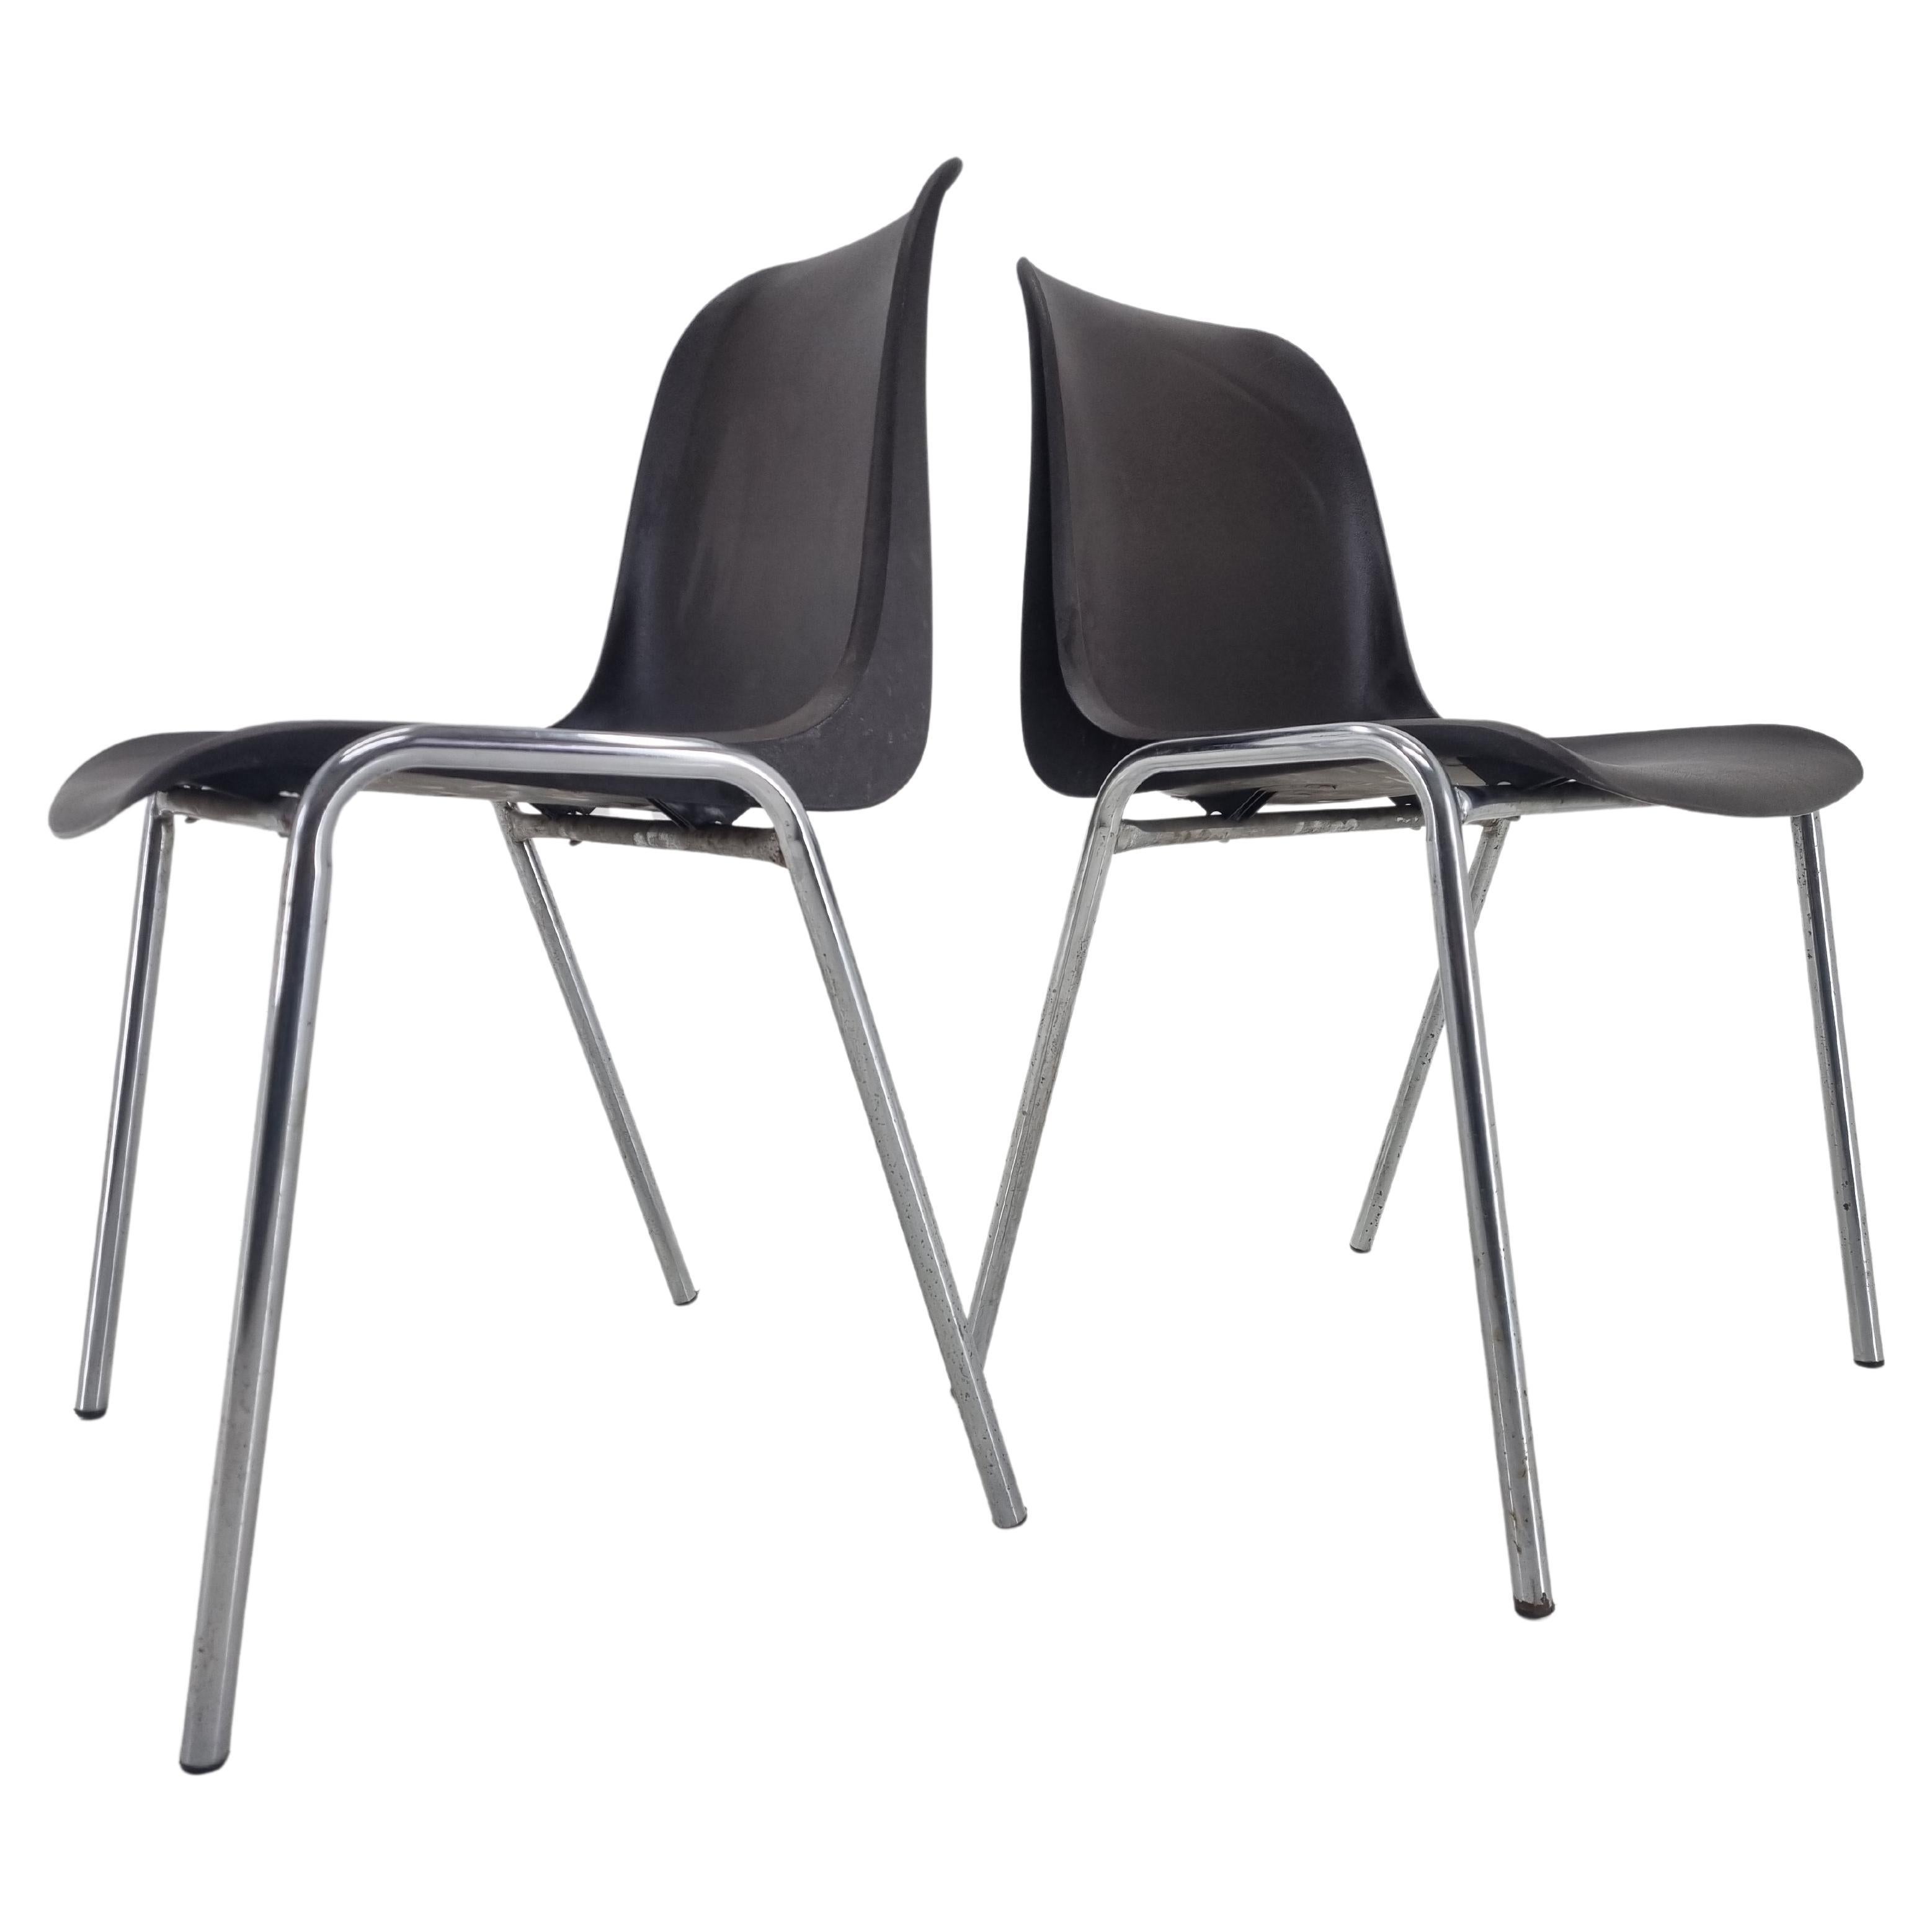 Ensemble de 2 chaises Europa conçues par Helmut Starke, années 1990